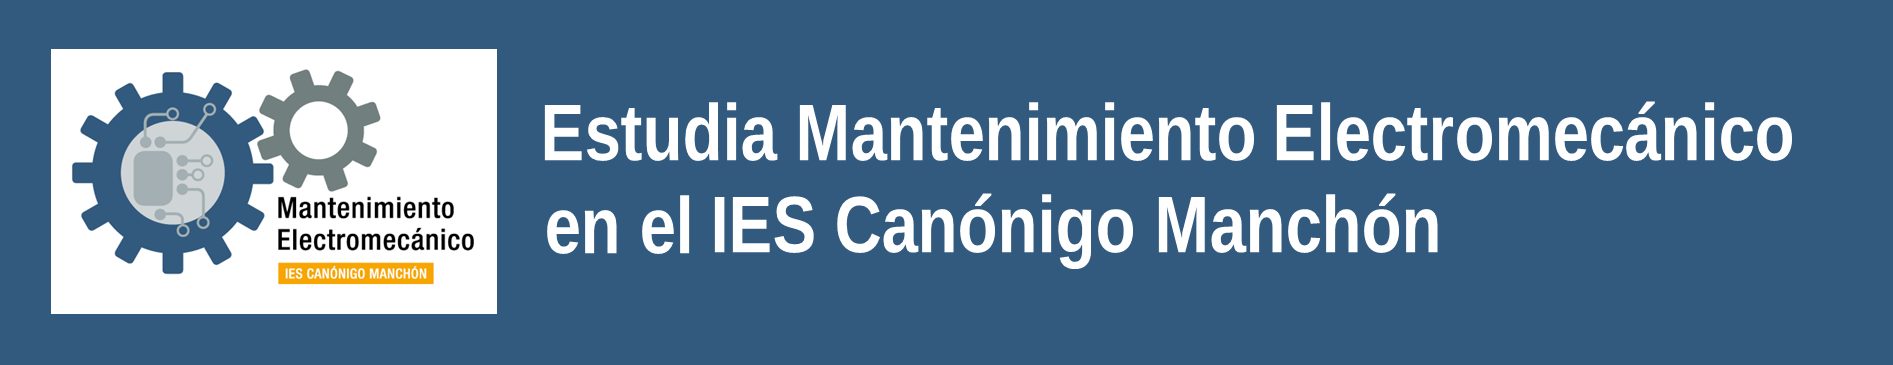 Estudia Mantenimiento Electromecánico en el IES Canónigo Manchón